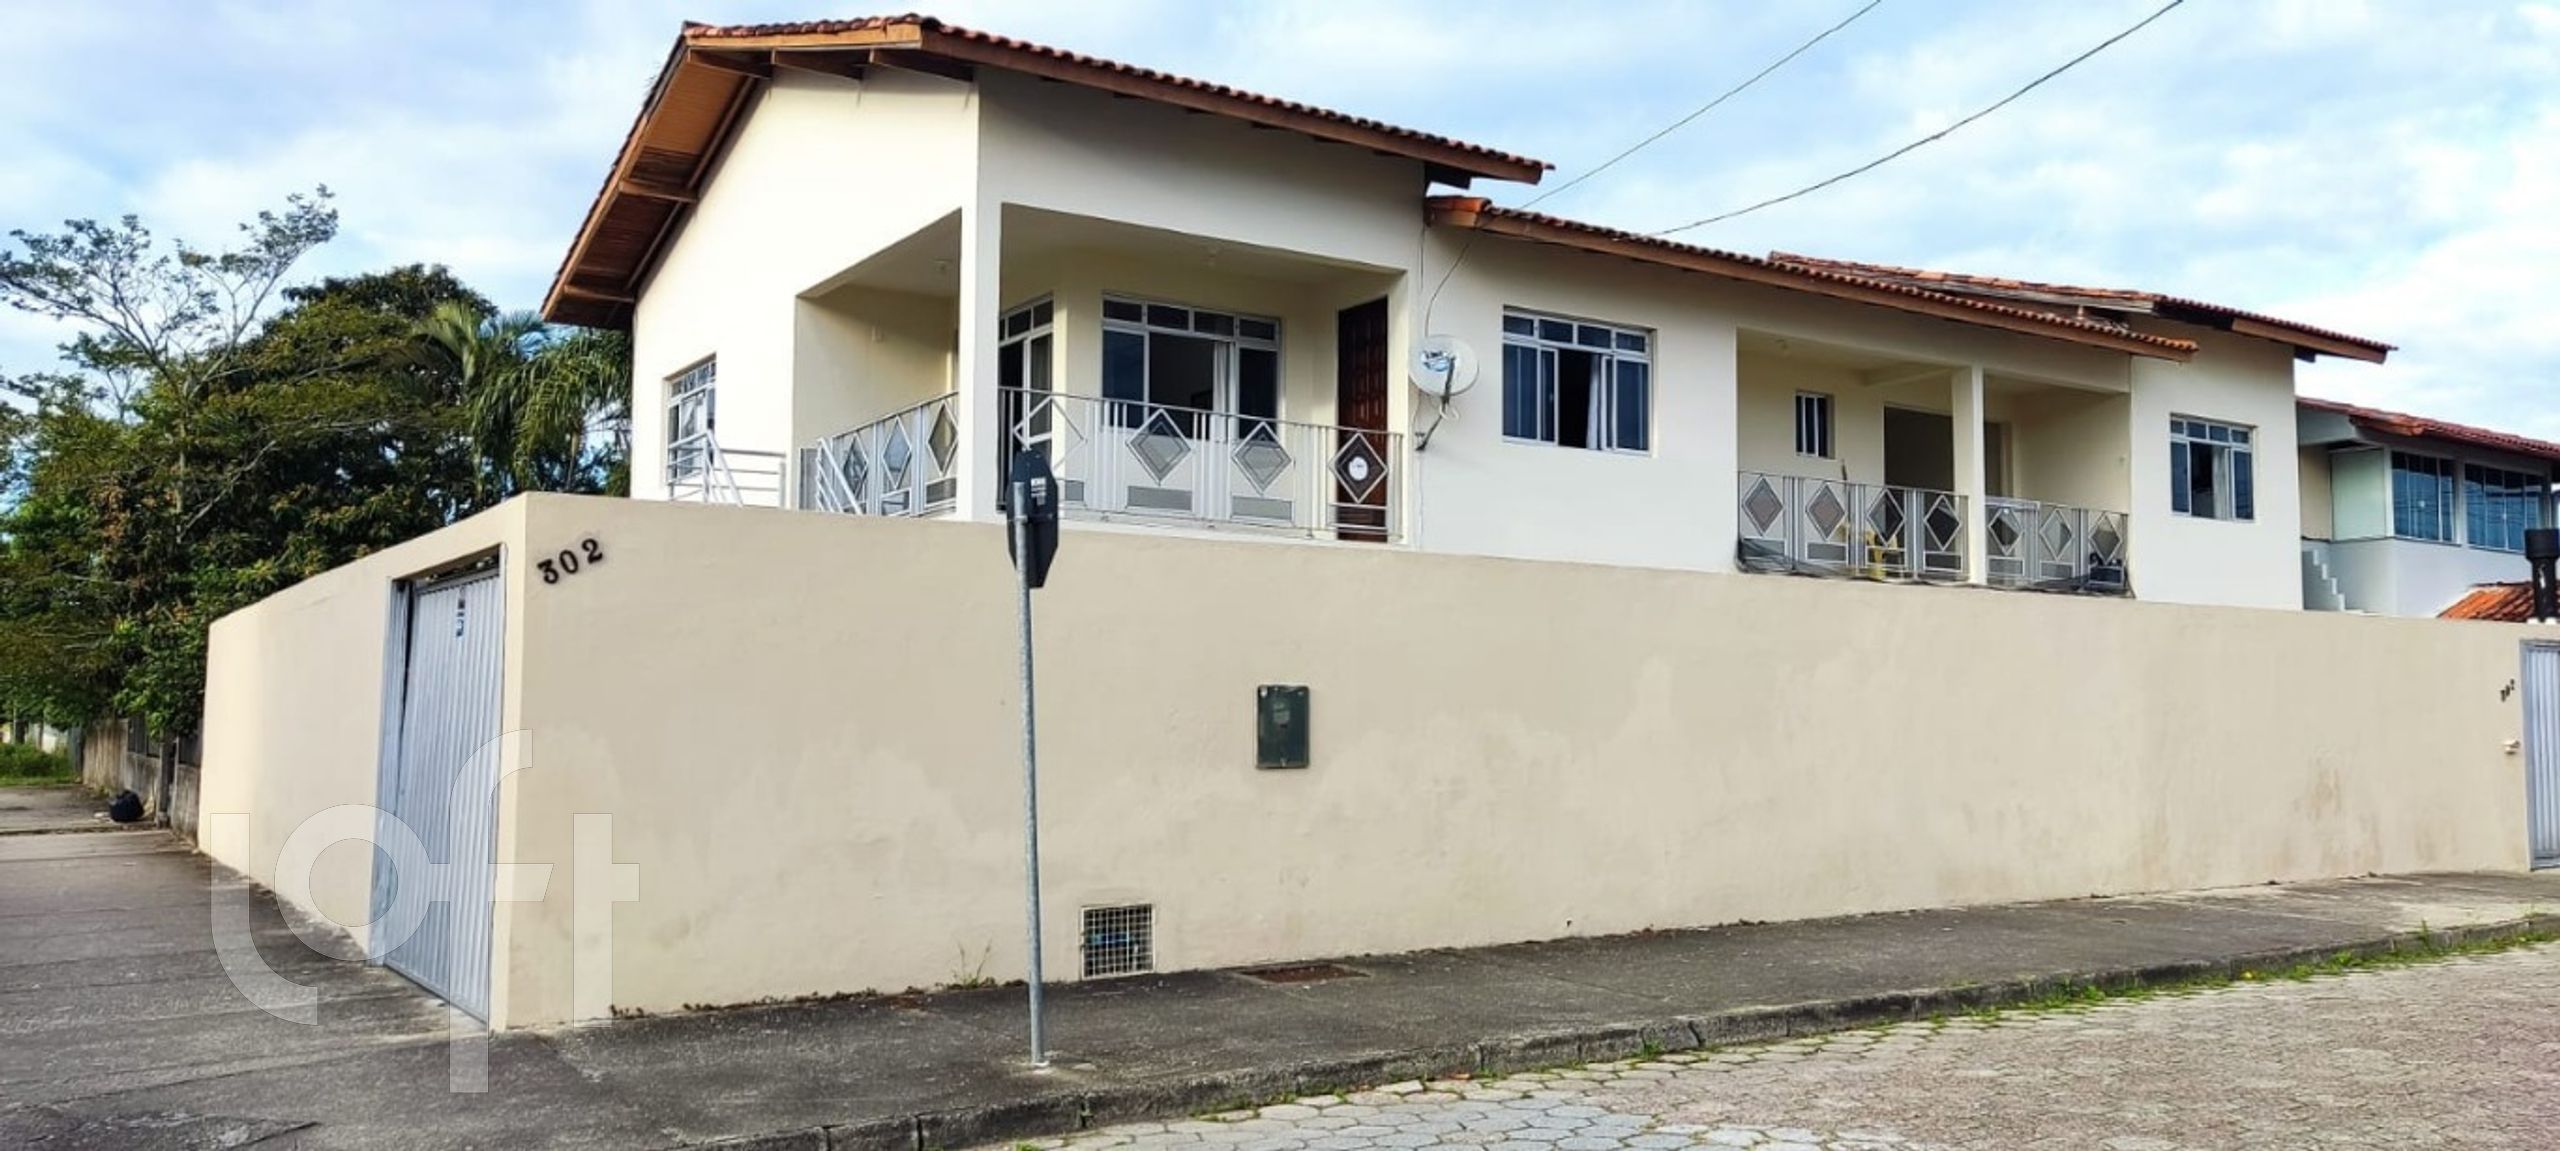 VENDA &#8211; Casa de 6 quartos no bairro Ressacada, Florianópolis &#8211; PU8izord